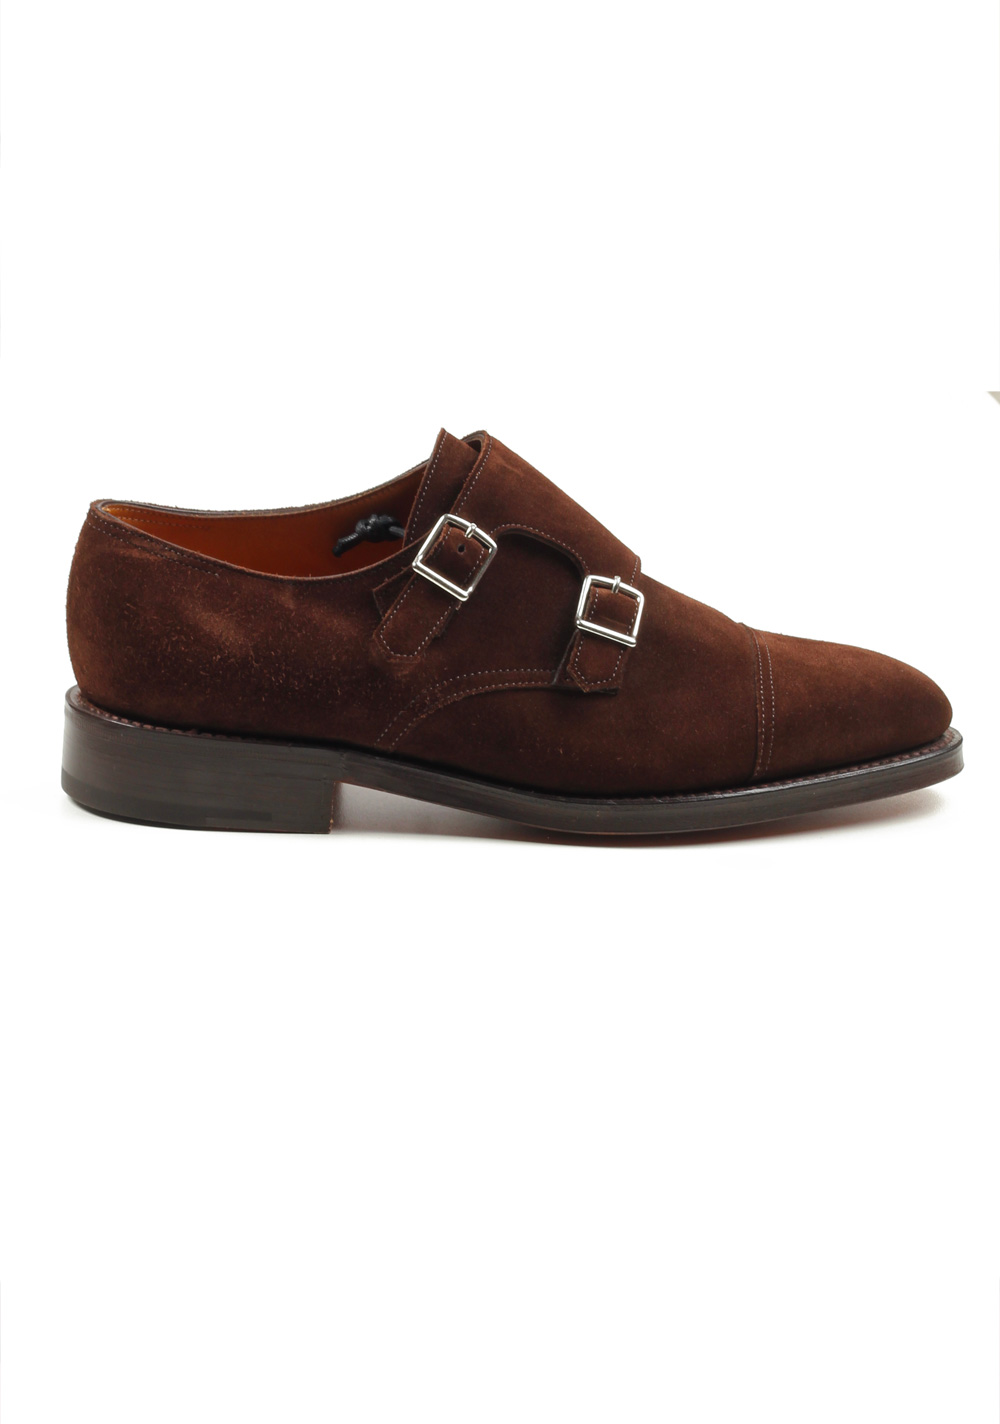 John Lobb William Brown Double Monk Strap Shoes Size 6 UK / 7 U.S. On 9795 Last | Costume Limité